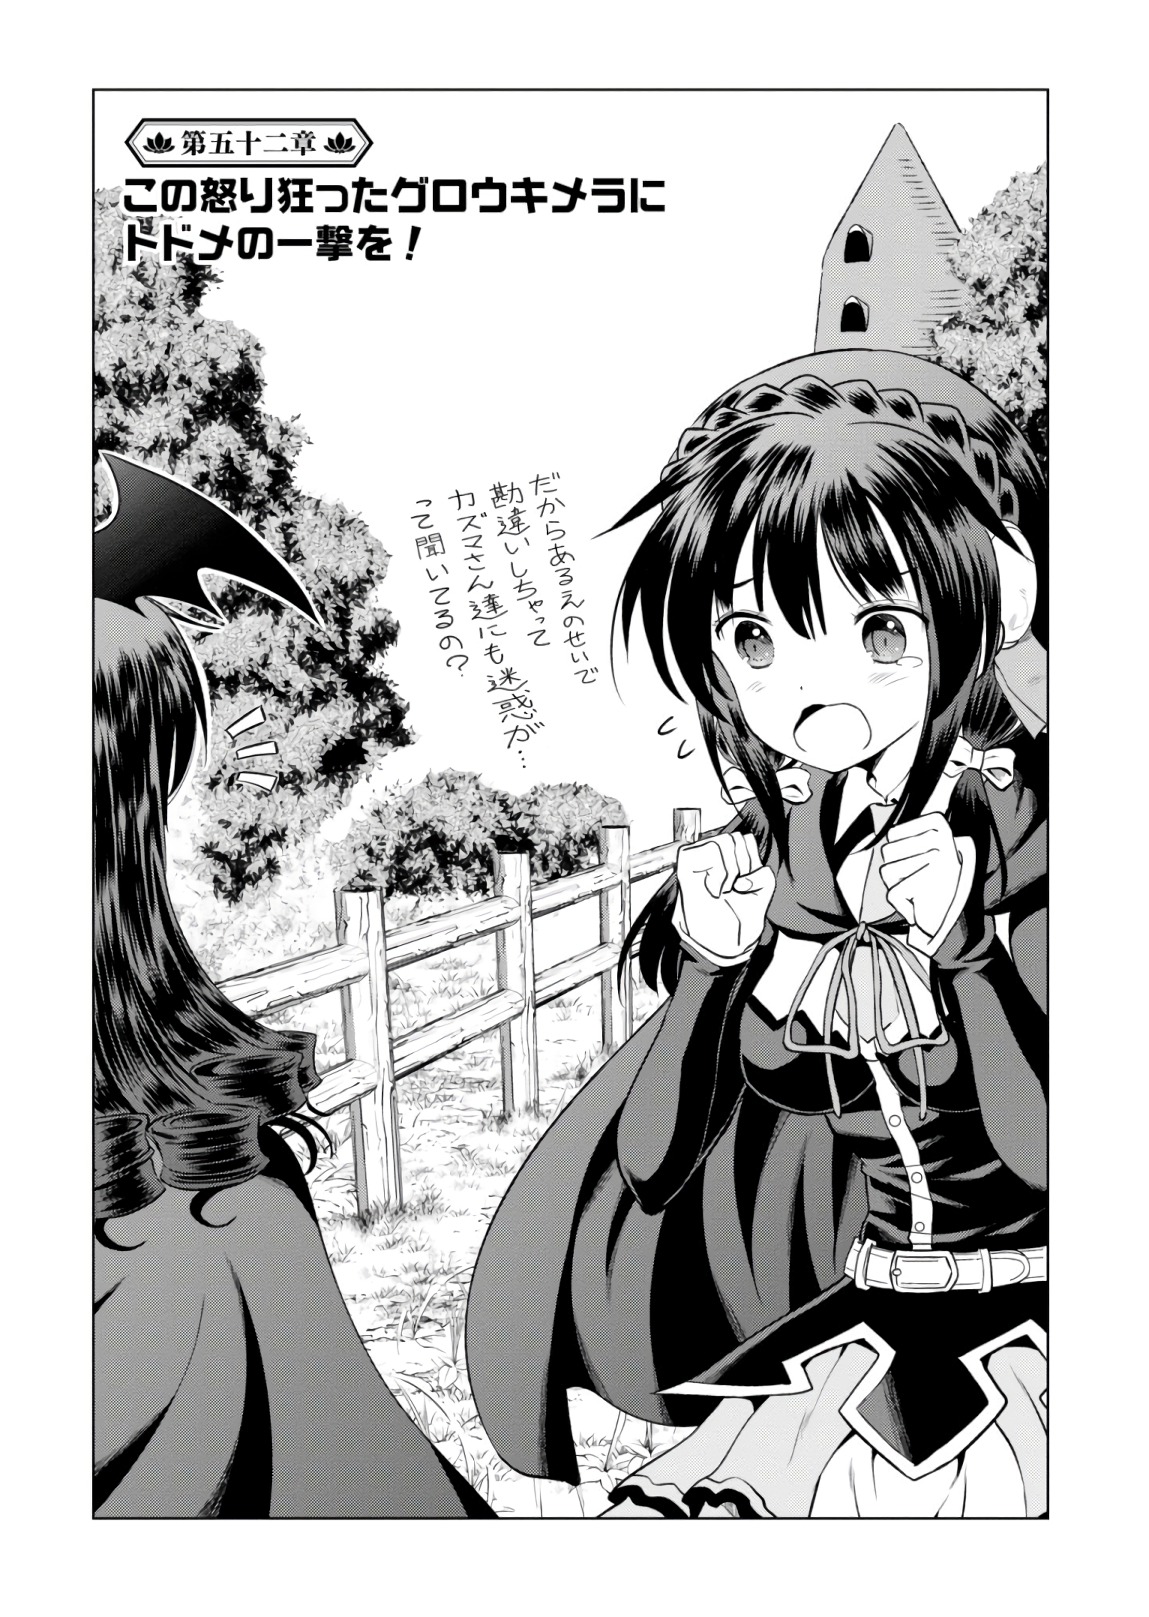 Light Novel 'Kono Subarashii Sekai ni Shukufuku wo!' Ends 